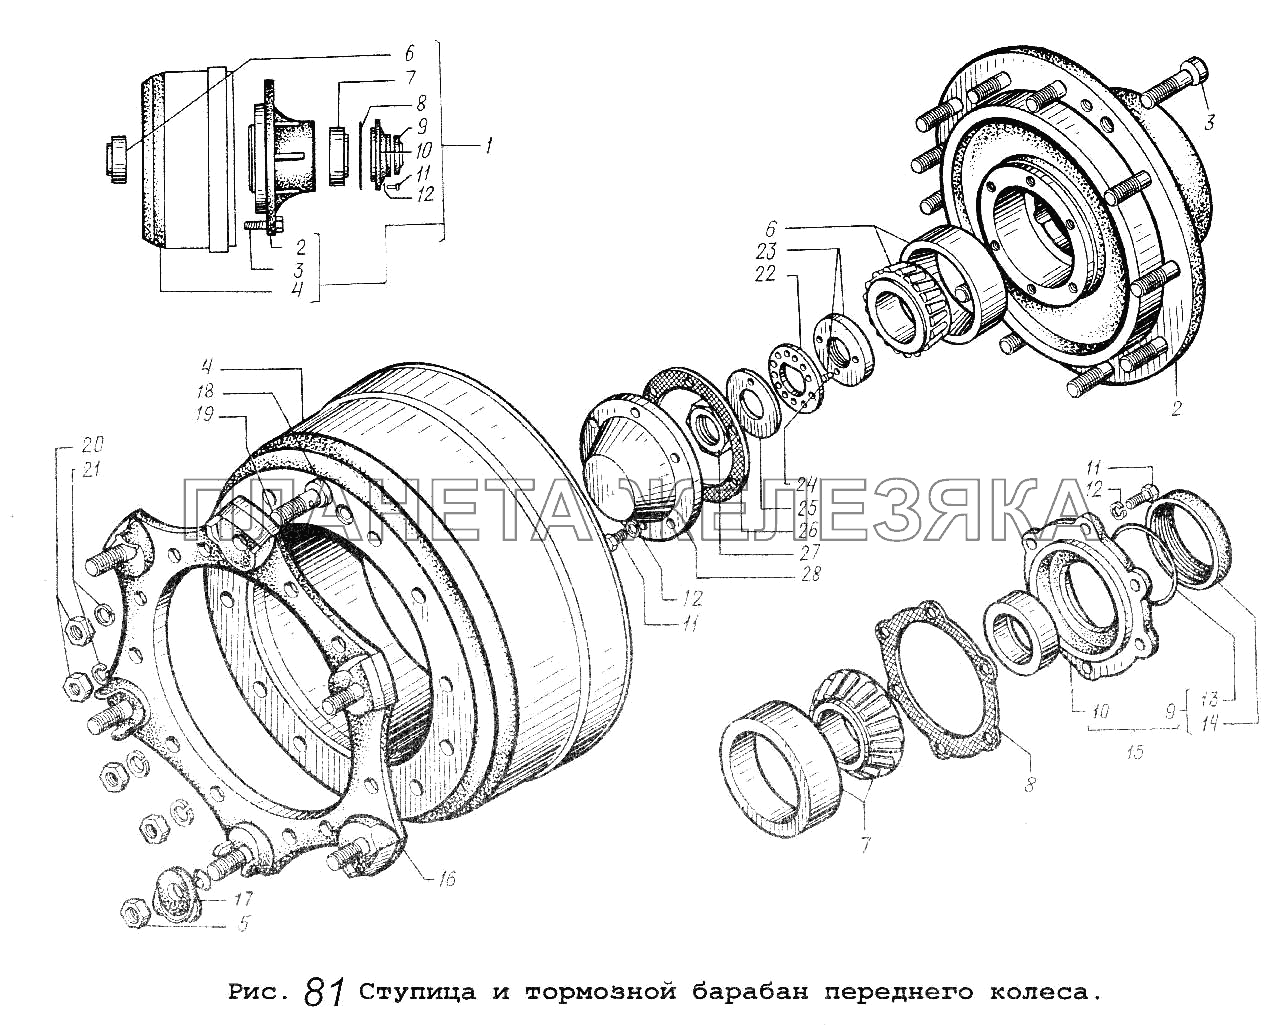 Ступица и тормозной барабан переднего колеса МАЗ-53371